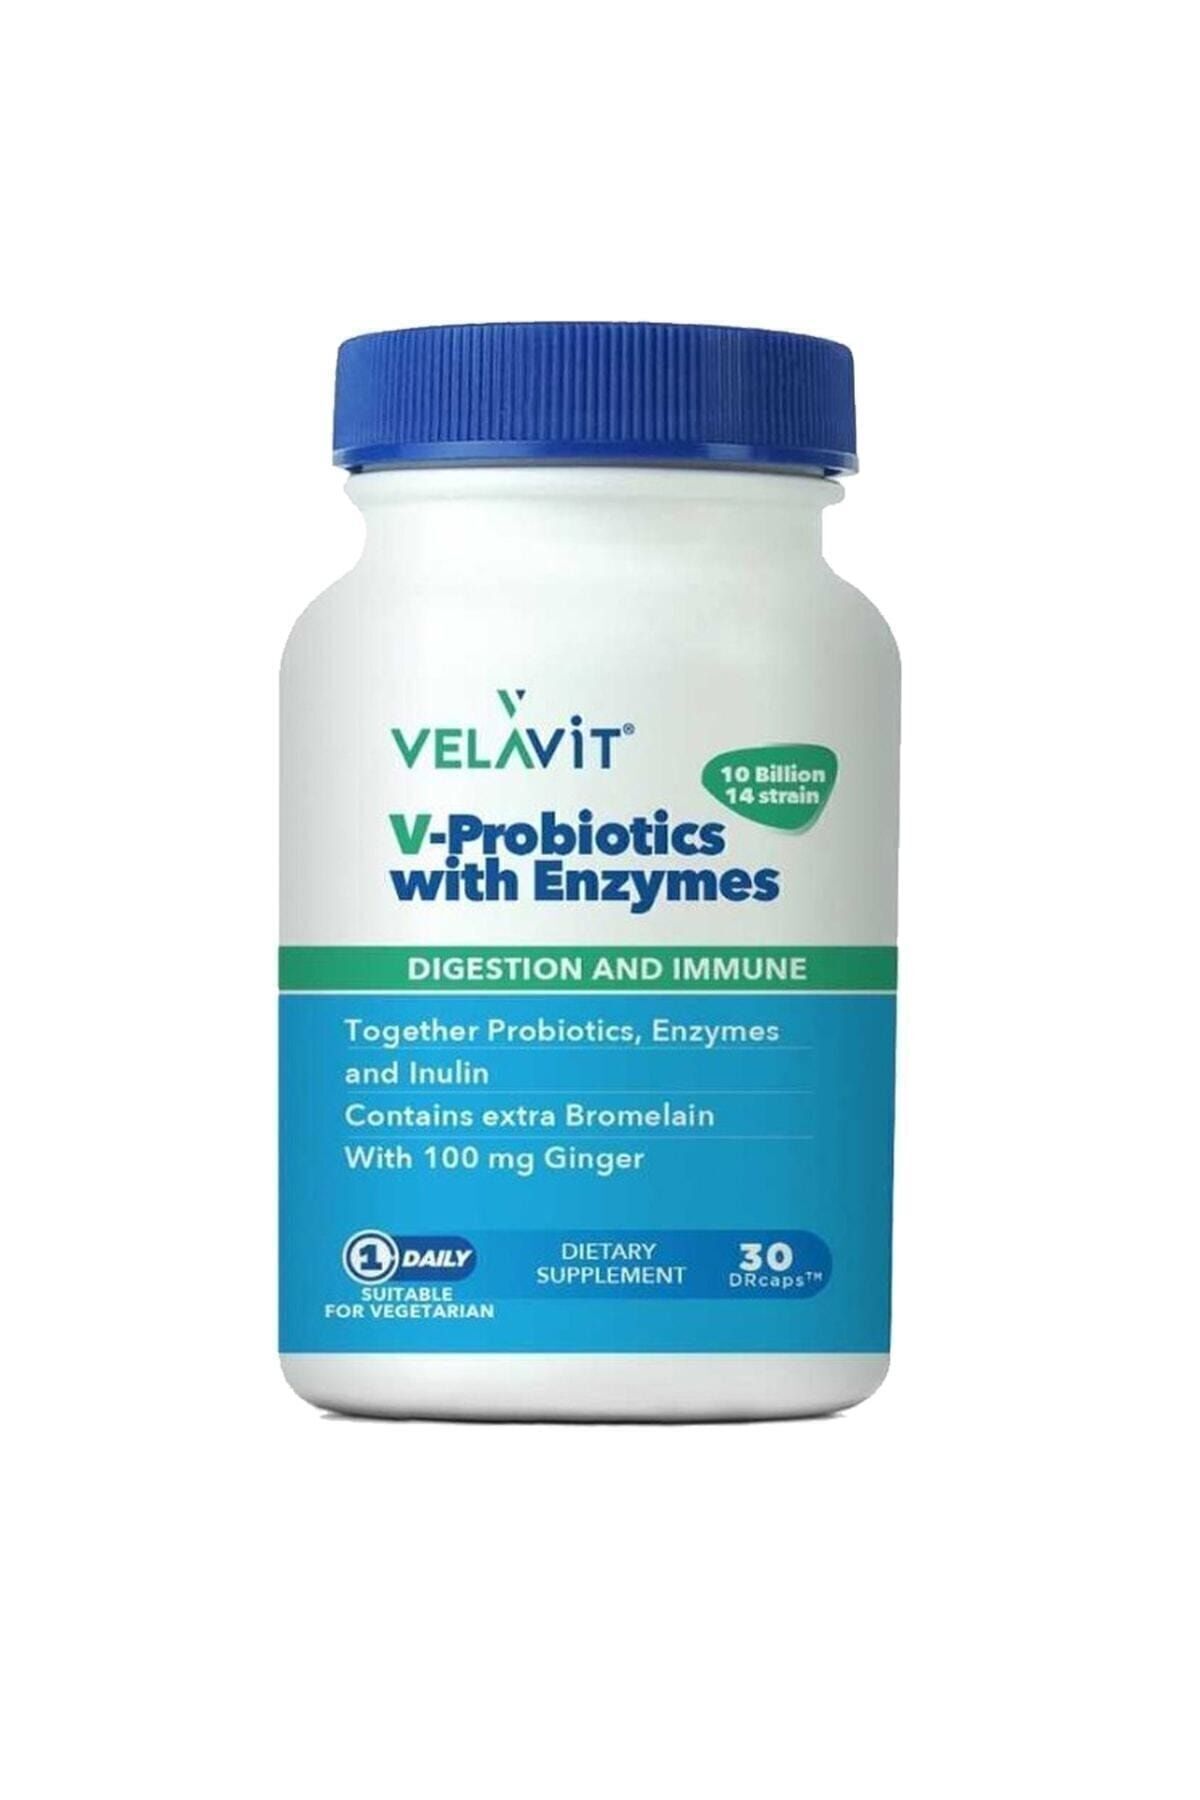 Velavit V-Probiotics with Enzymes